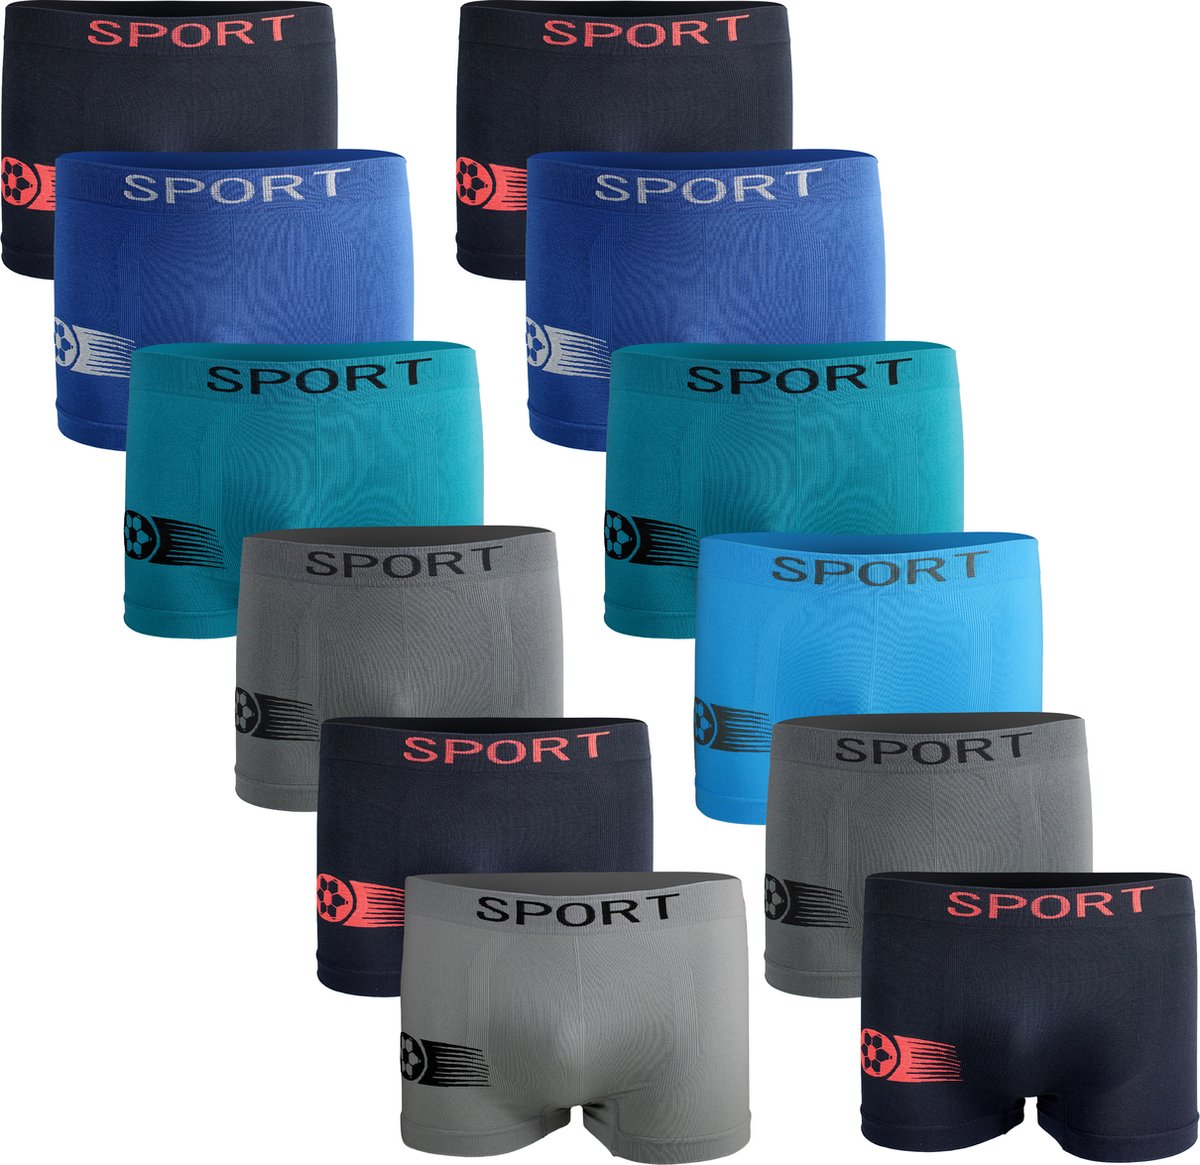 Jongens ondergoed - Microfiber jongens onderbroeken - VOORDELIGE 12 PACK Onderbroek - Boxershort maat 164/170 SJ60 - AltinModa